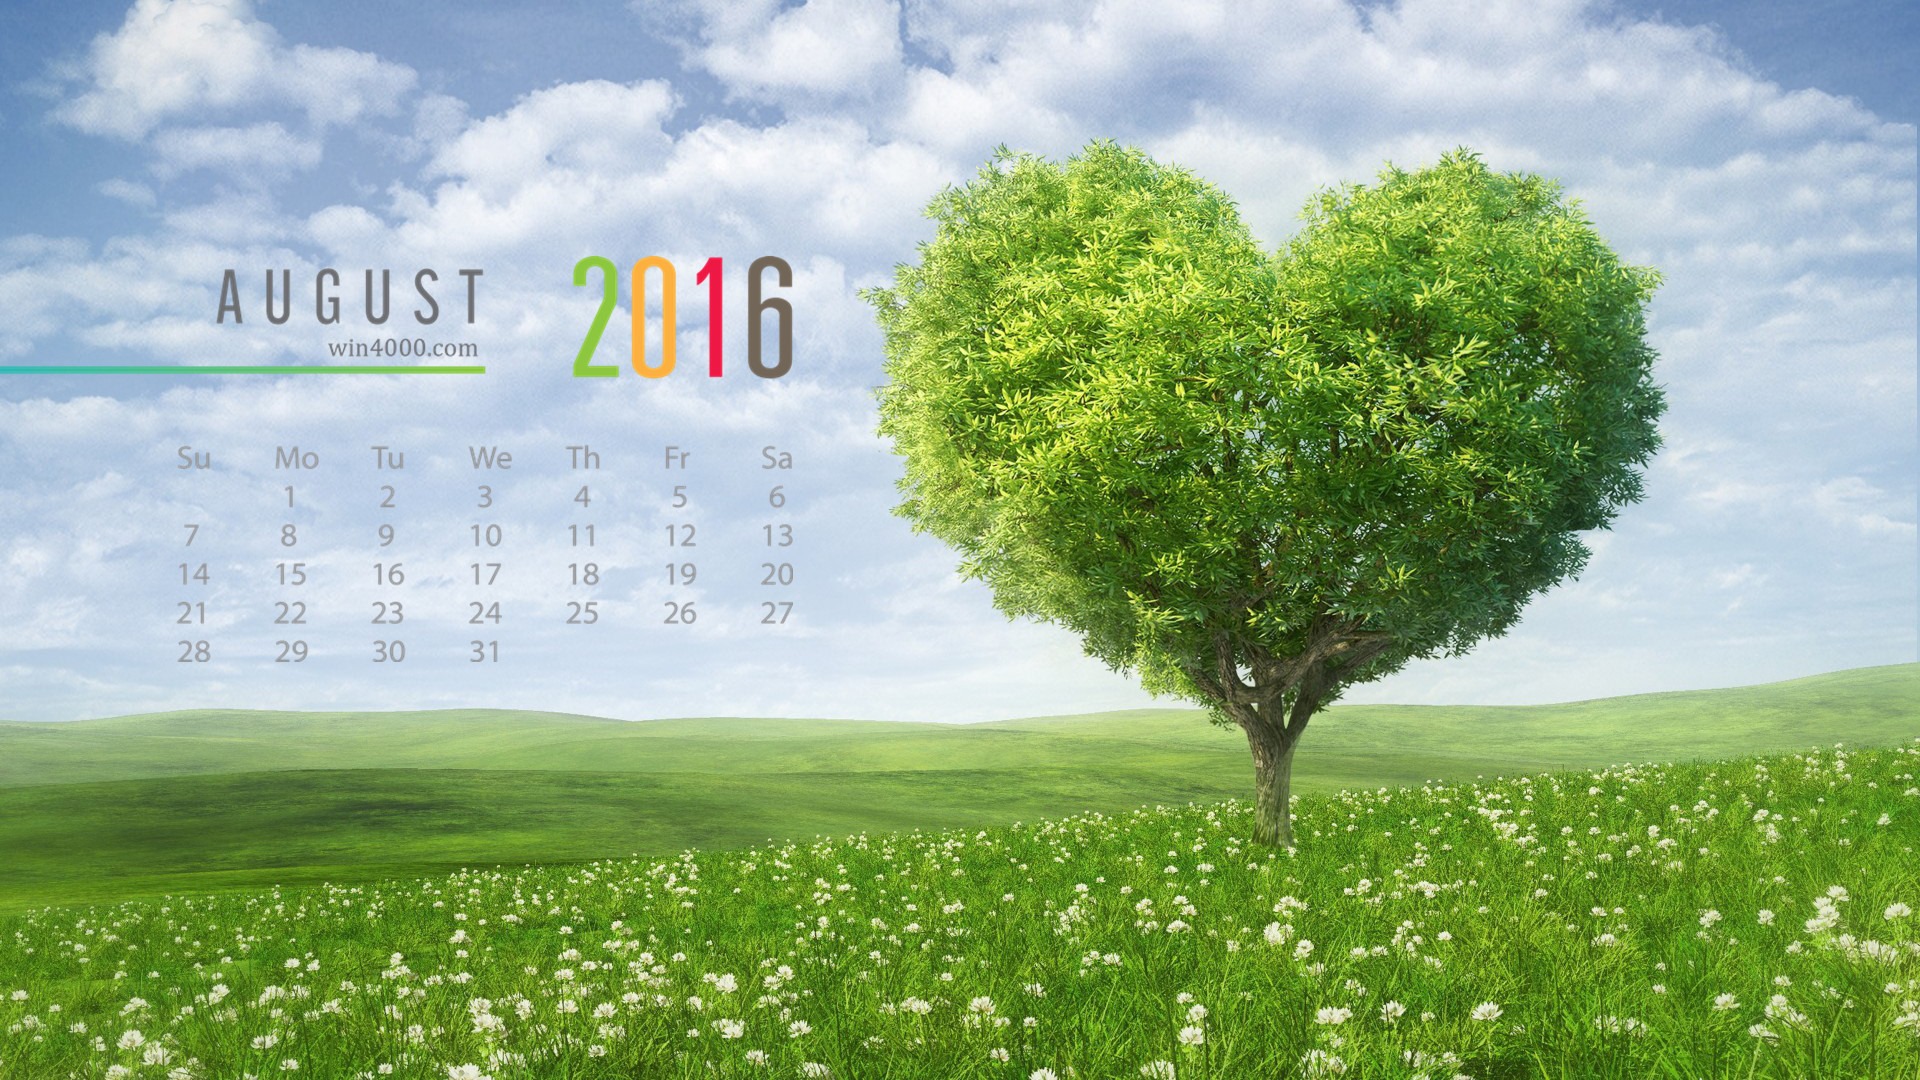 August 2016 calendar wallpaper (1) #3 - 1920x1080